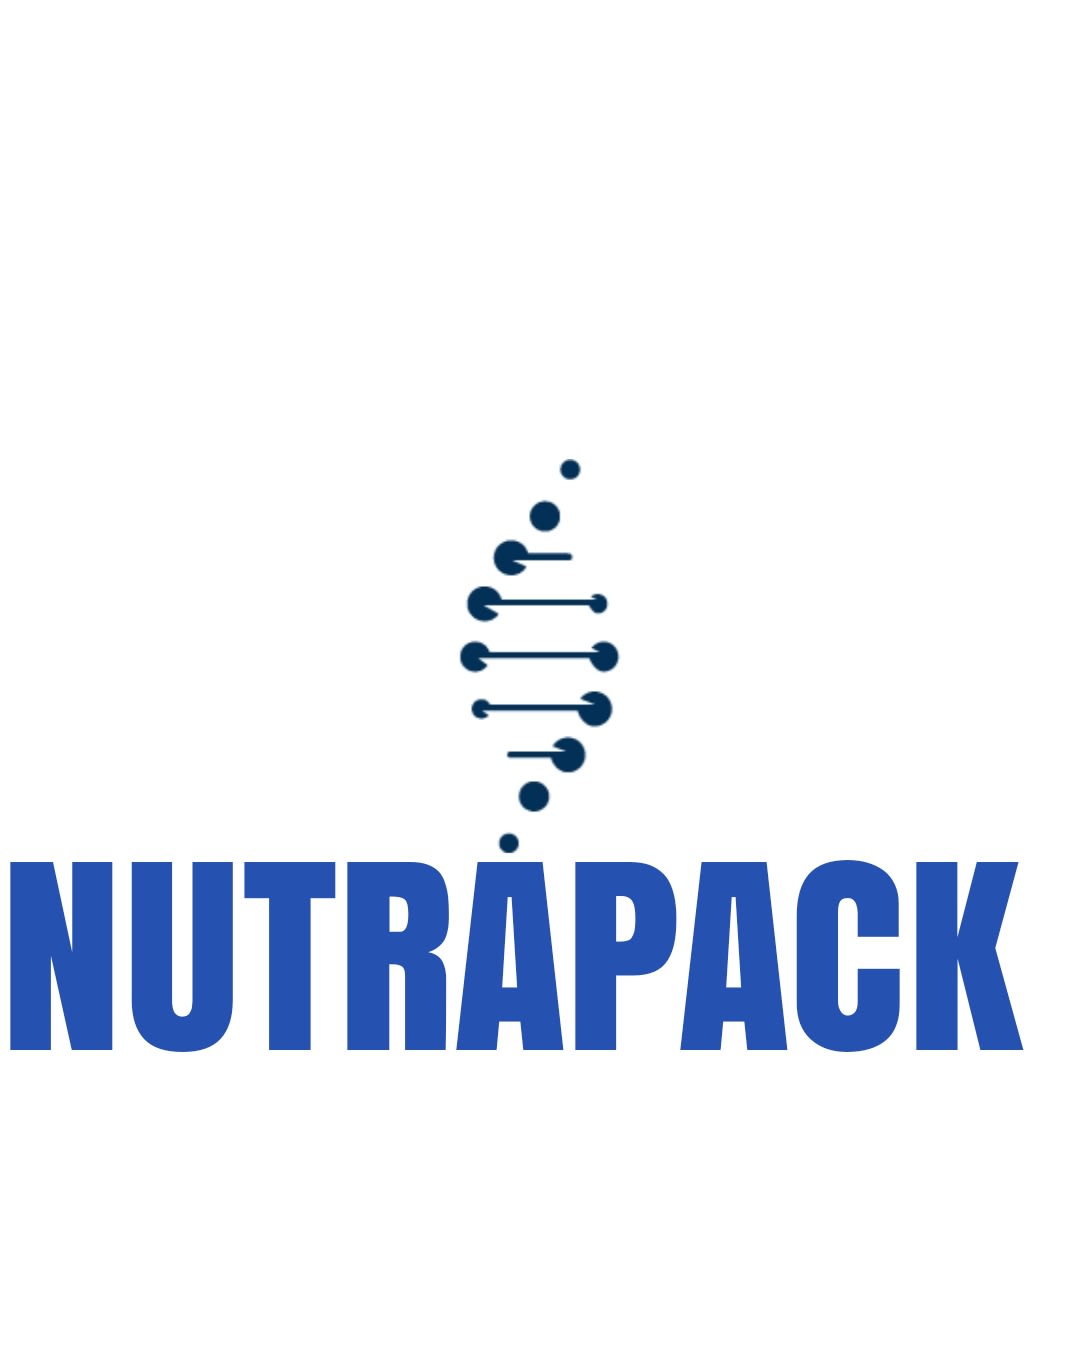 Nutrapack Ingredients